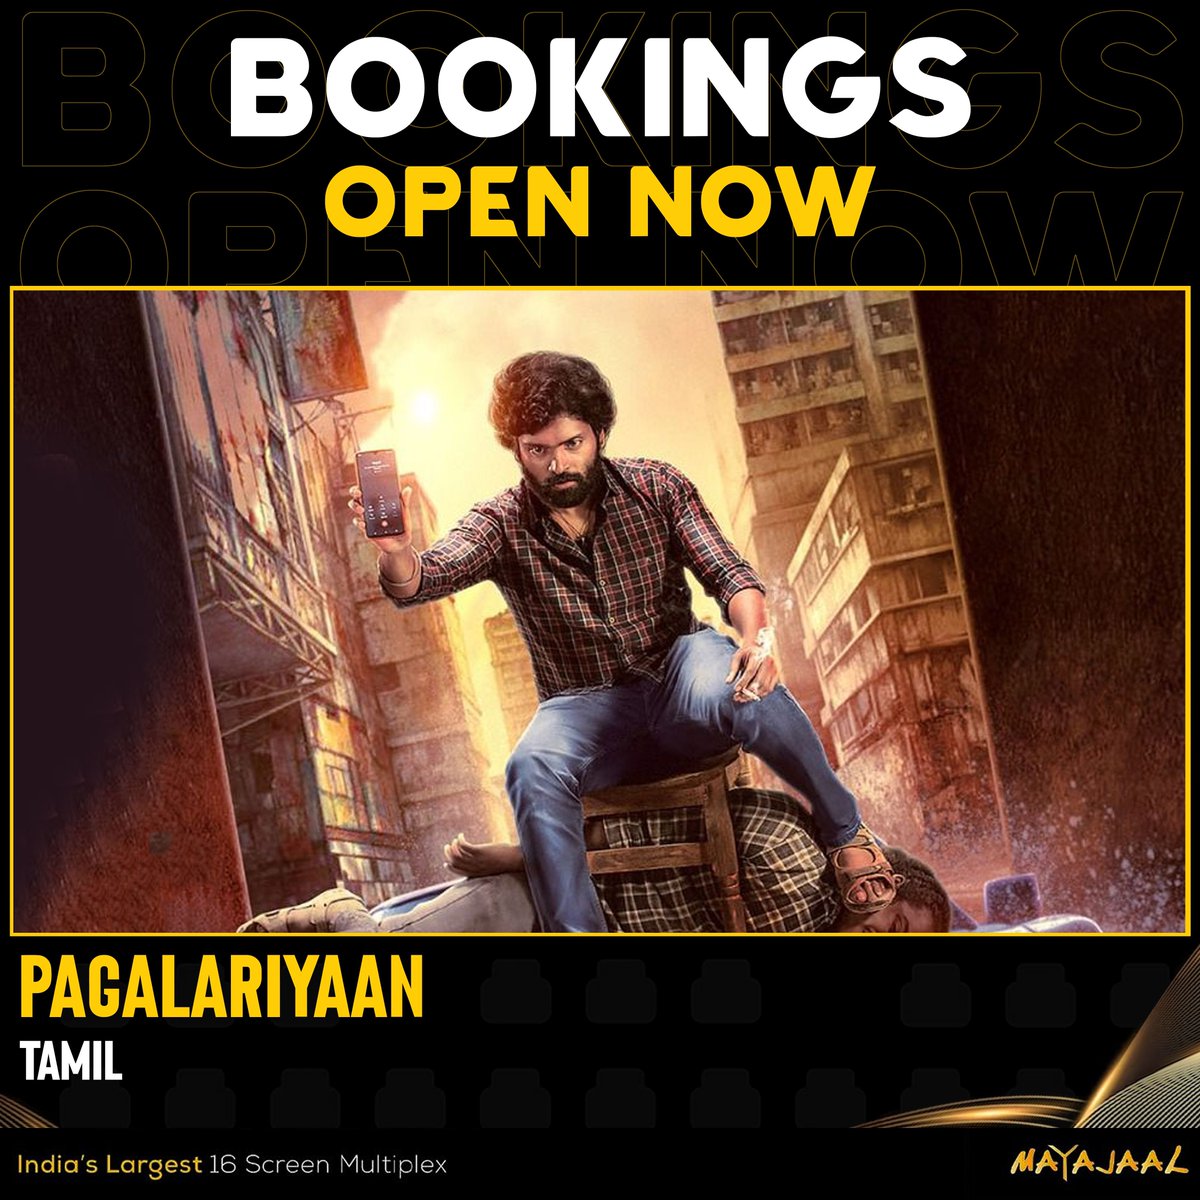 Get hooked on the mystery and drama of #Pagalariyaan Bookings open for #Pagalariyaan (Tamil) at #Mayajaal 🎟️bit.ly/3sVdbqD #ActorVetri #Akshaya